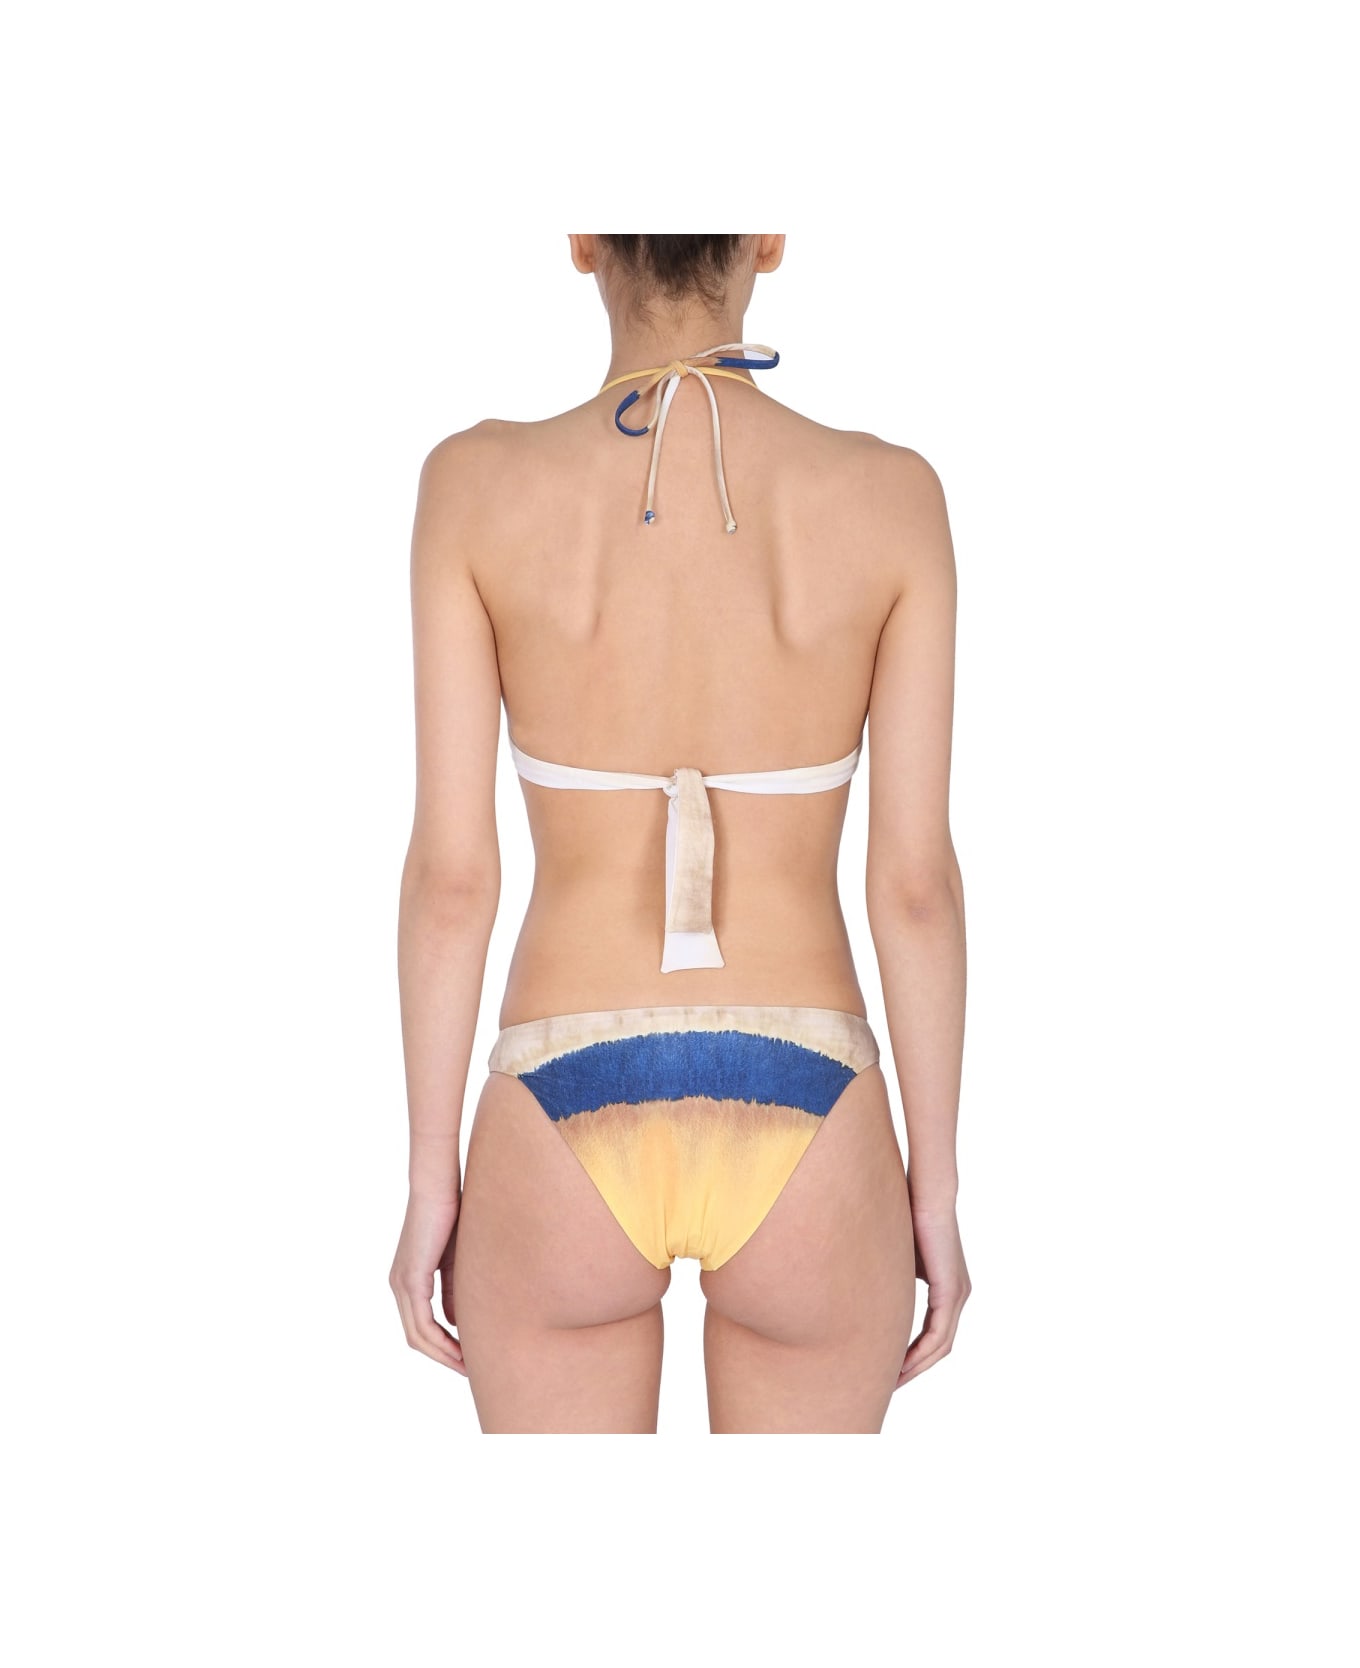 Alberta Ferretti Bikini Set With Tie Dye Print - MULTICOLOUR